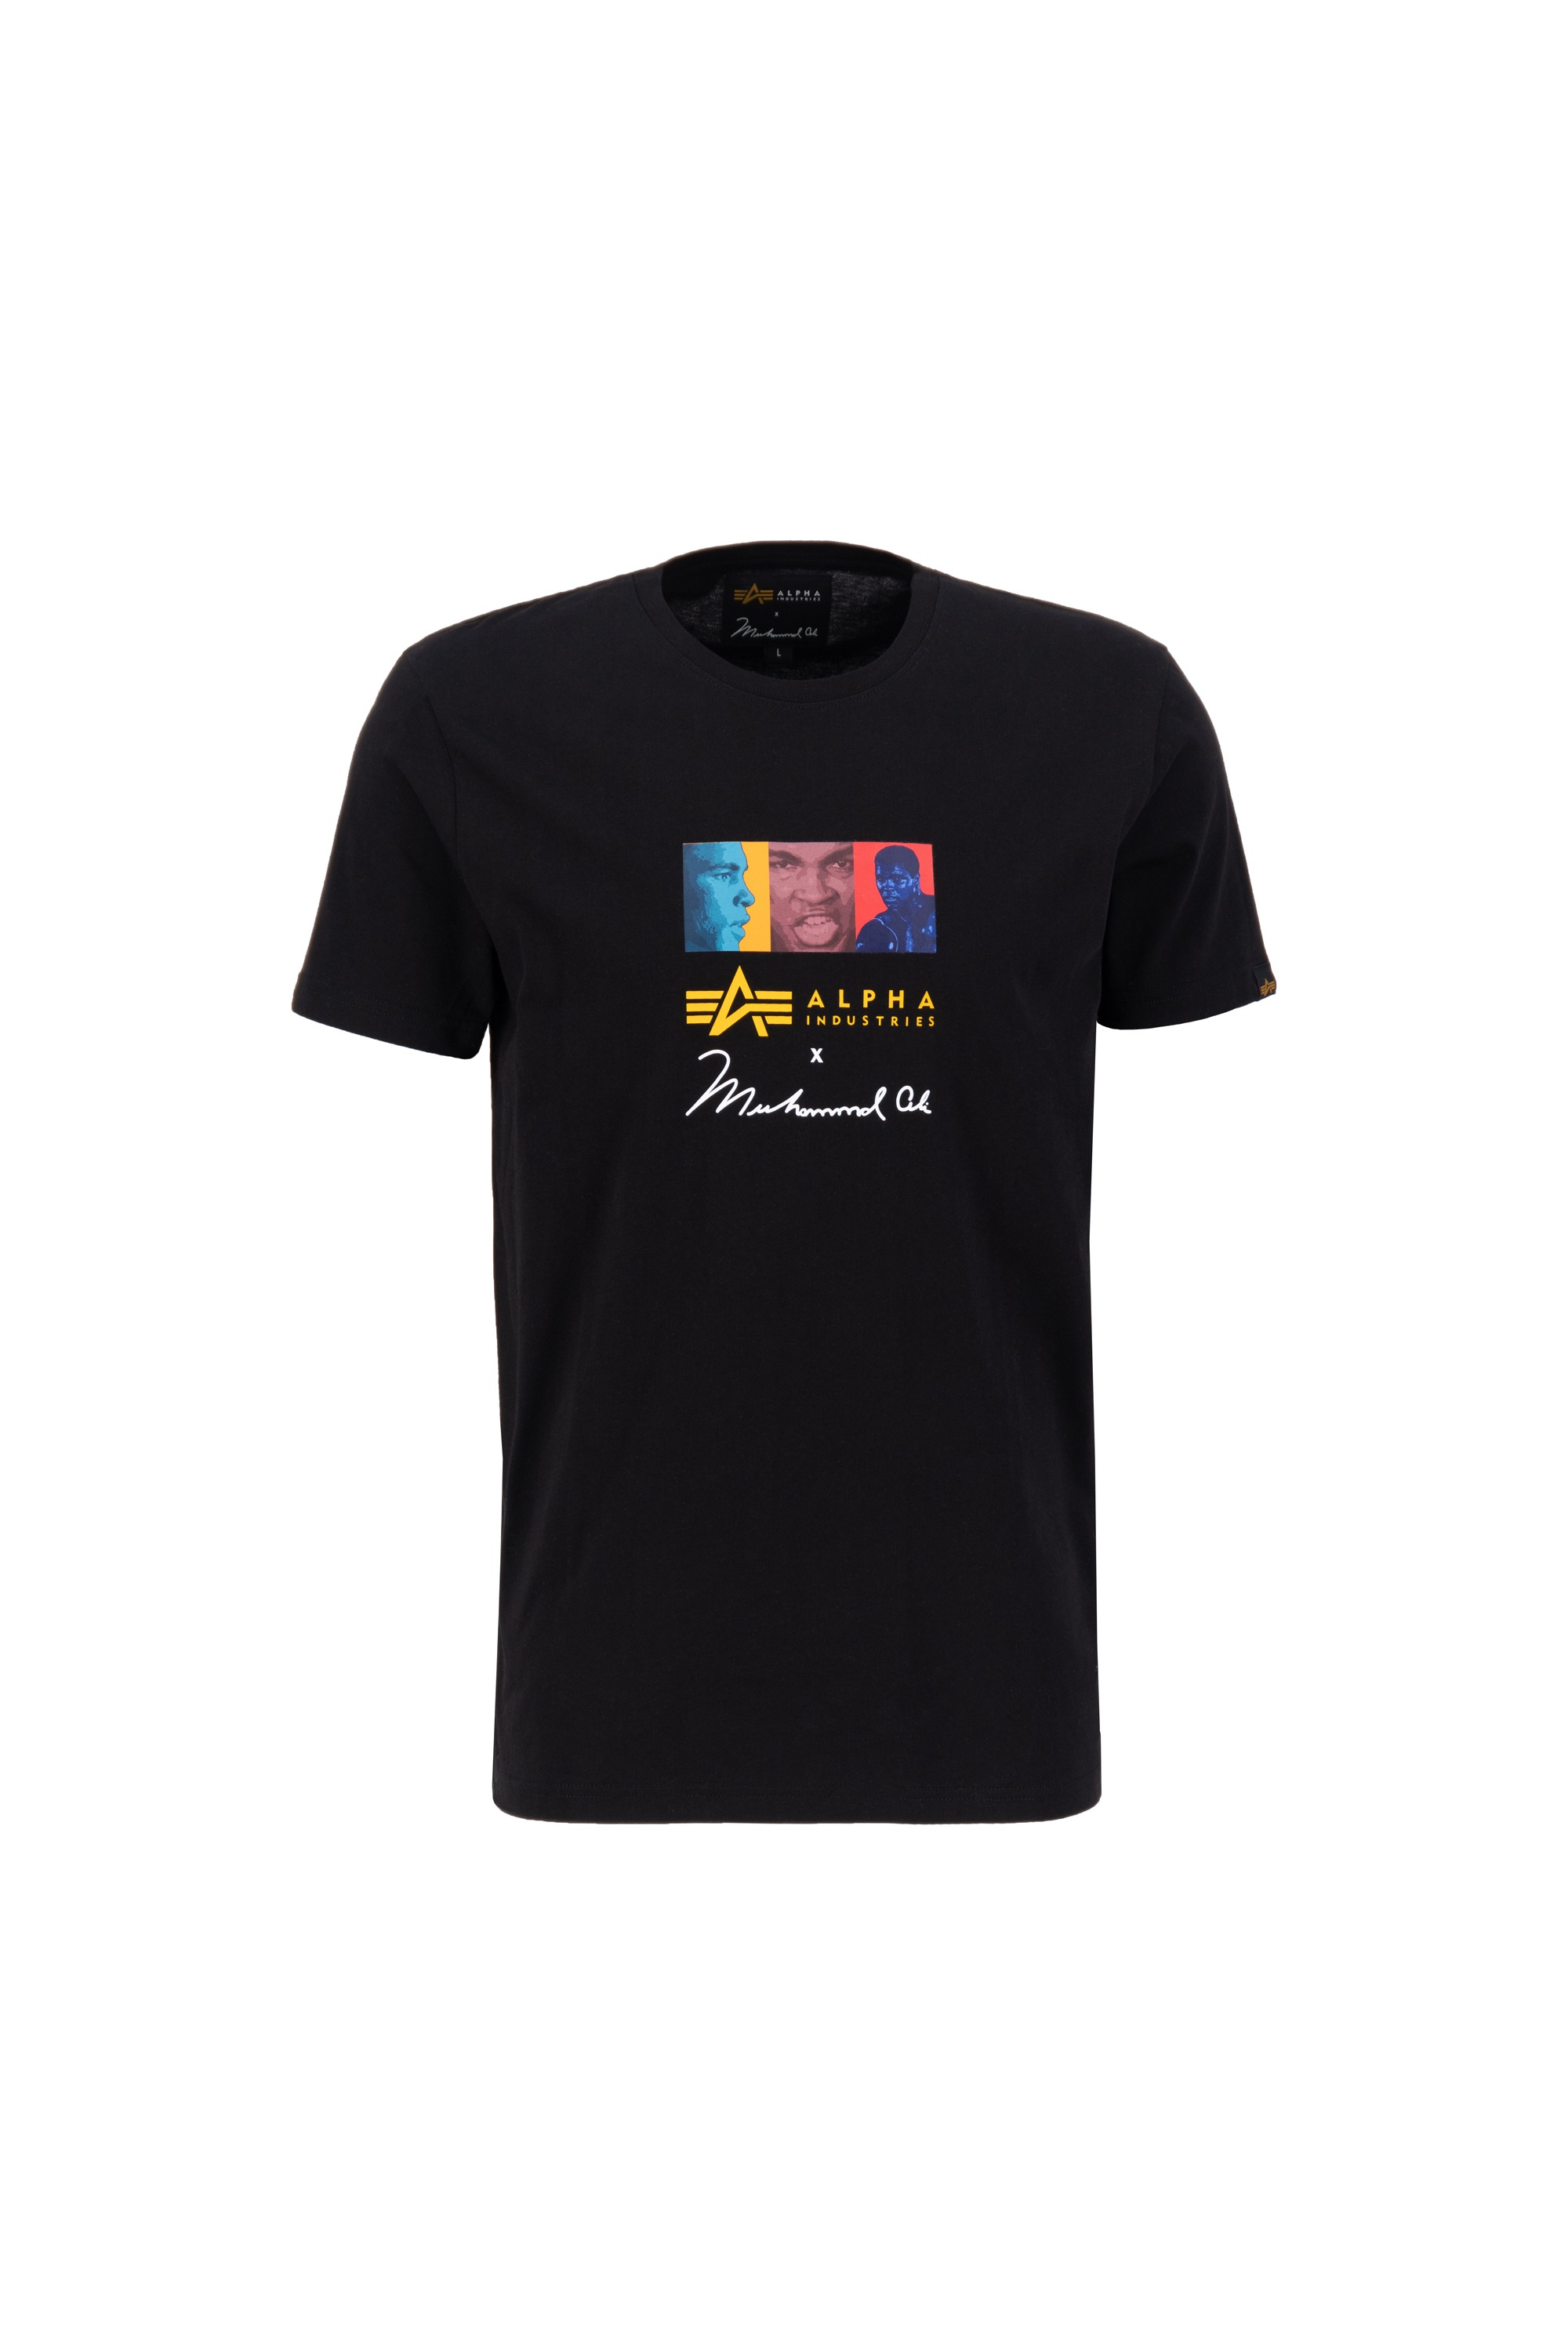 Men Ali Alpha T-Shirt online »Alpha Industries Pop Art Muhammad - T« T-Shirts Industries bestellen